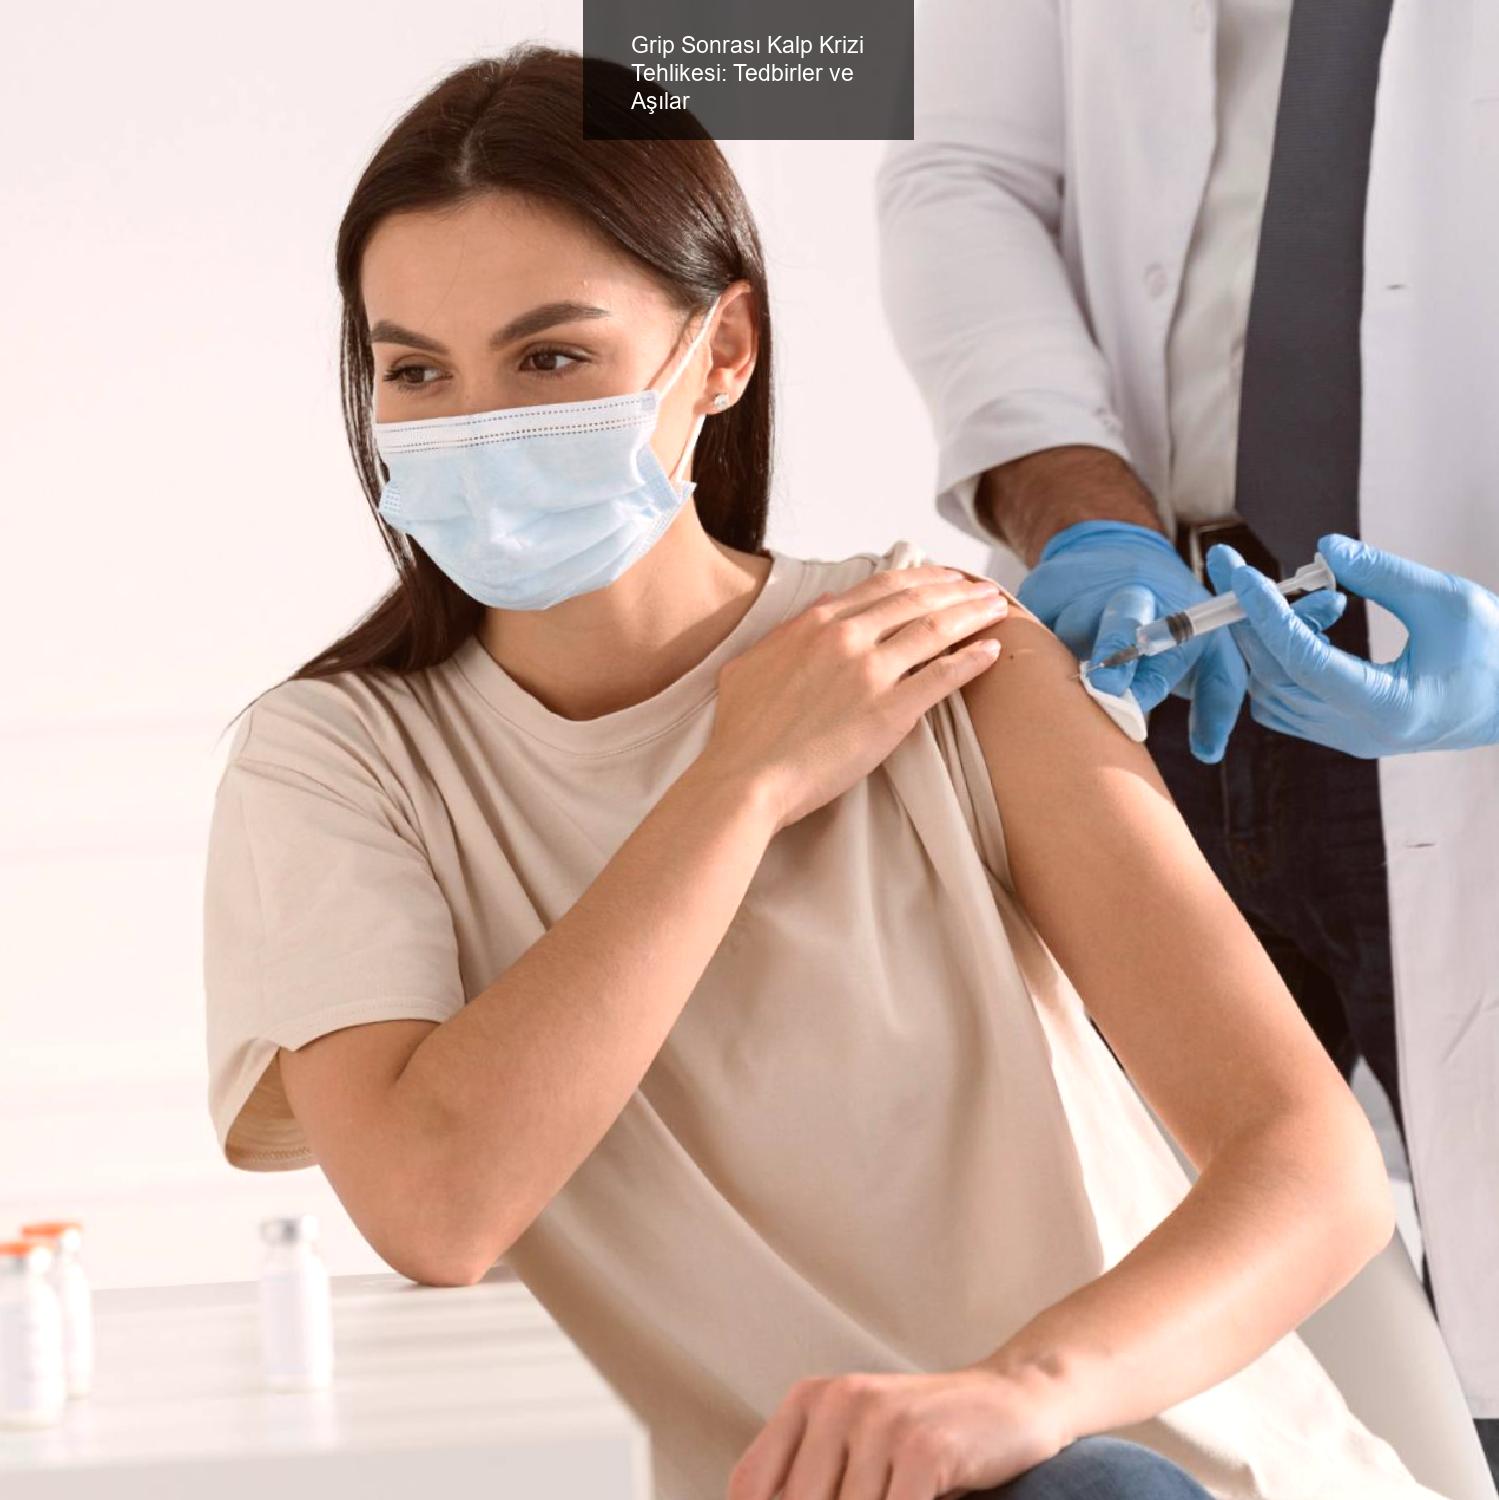 Grip Sonrası Kalp Krizi Tehlikesi: Tedbirler ve Aşılar